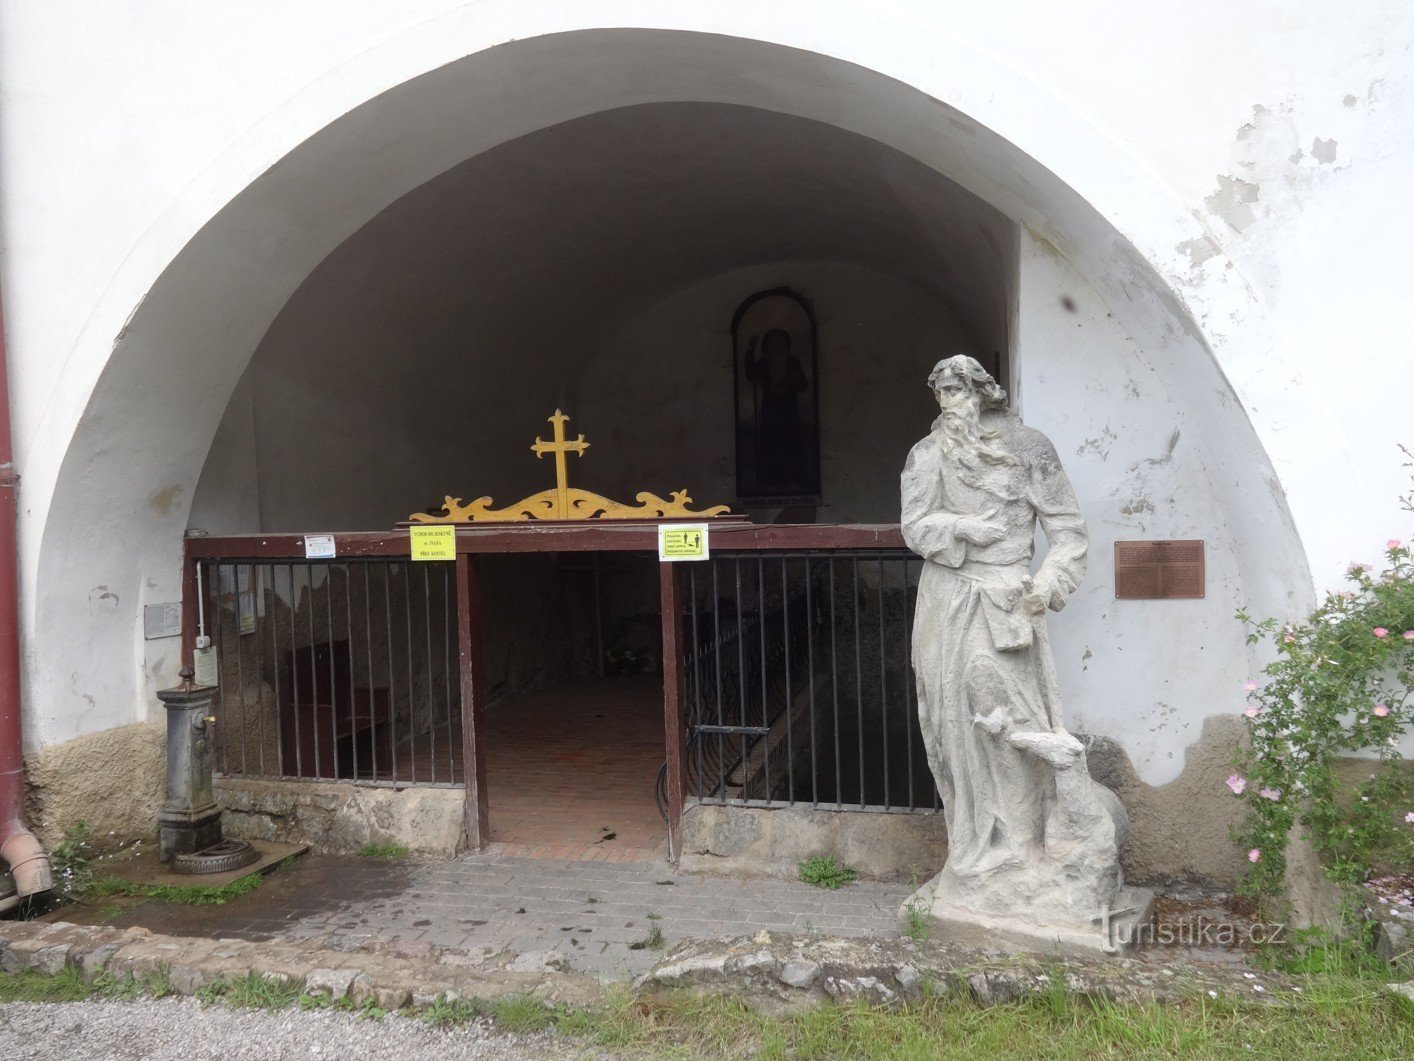 セント。 Jan pod Skalou と聖イヴァンの井戸、聖誕教会の近く。 ジョン・ザ・バプティスト